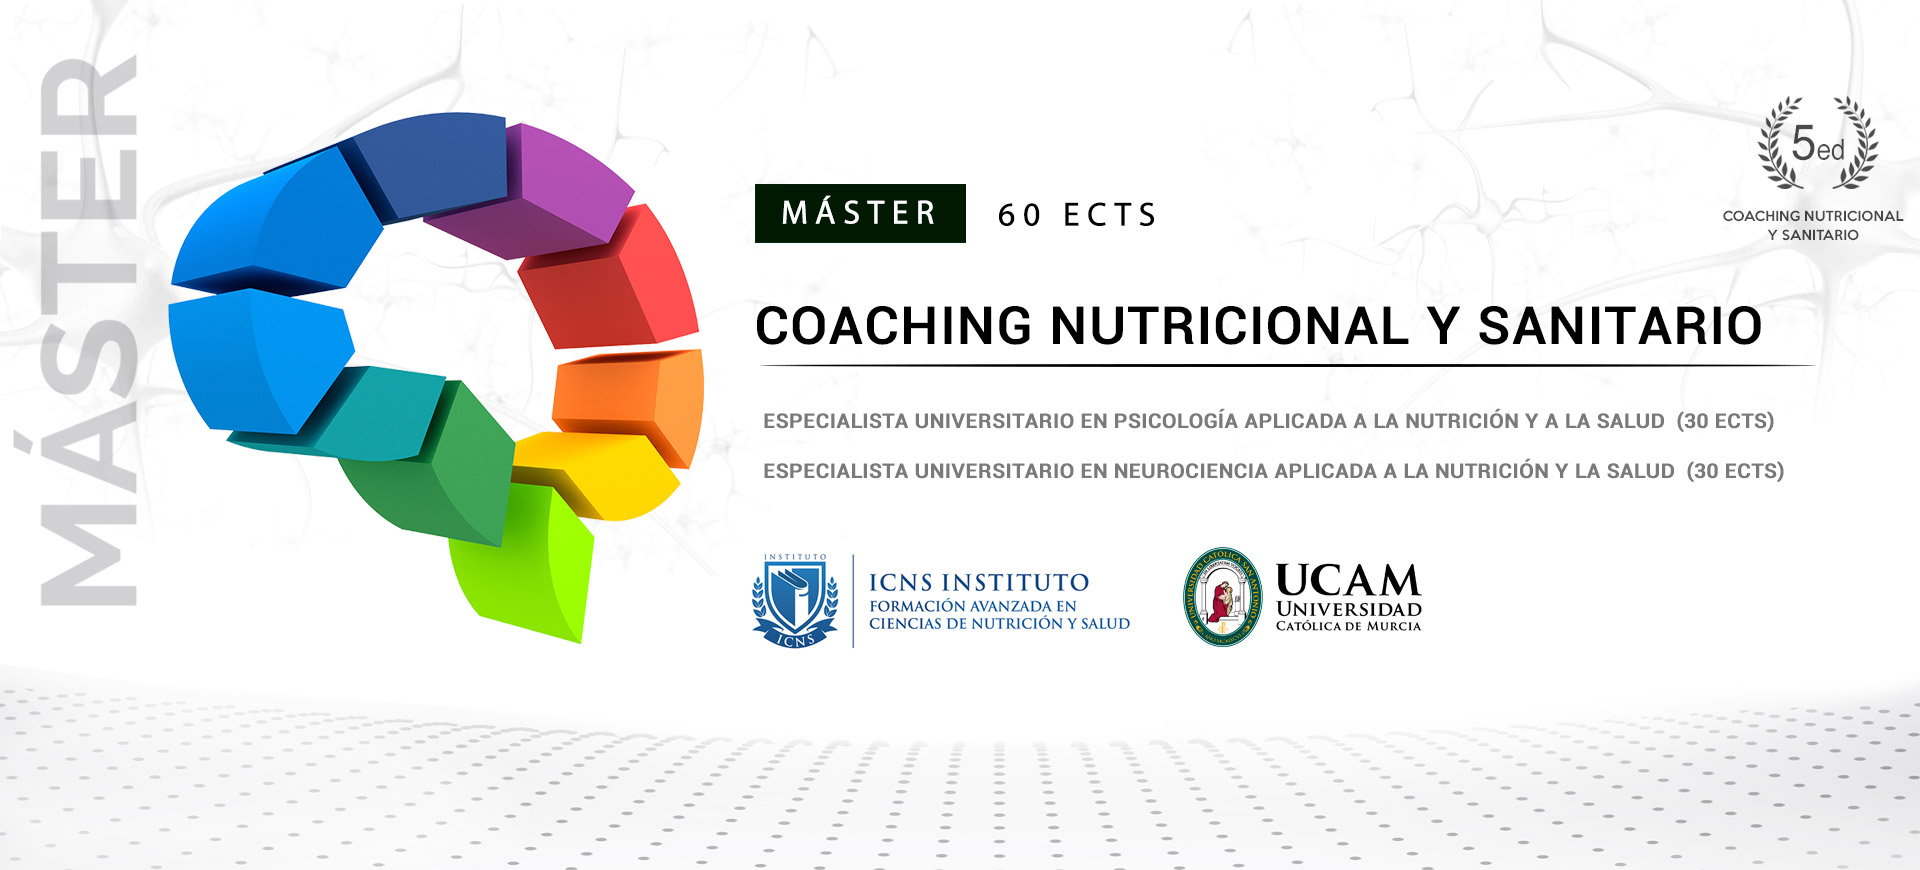 M�ster en Coaching Nutricional y Sanitario